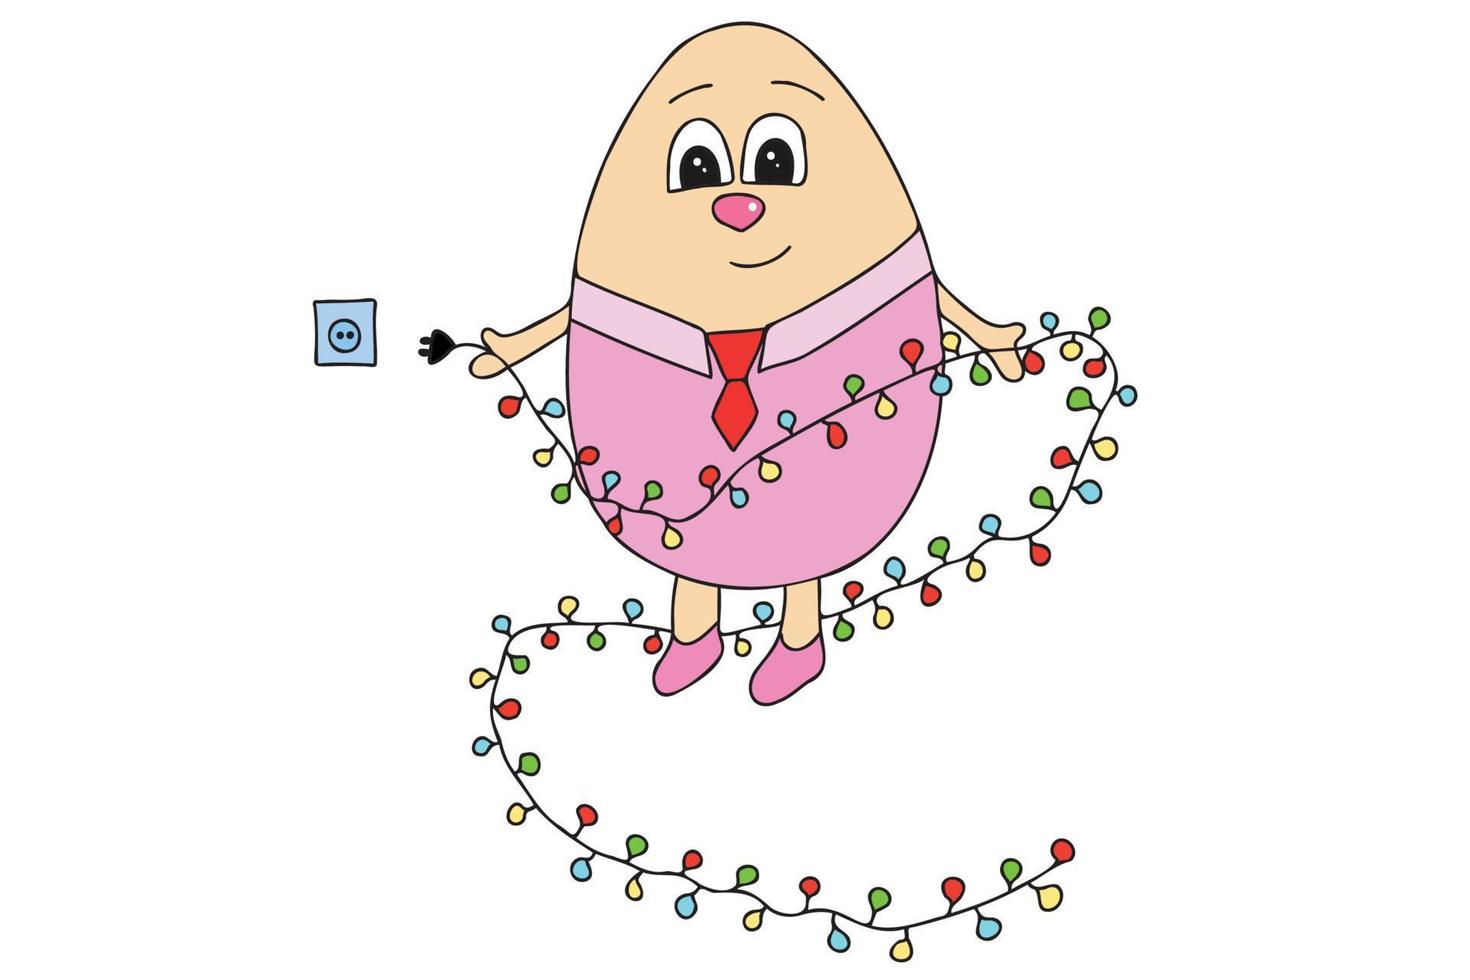 la imagen muestra un huevo de pascua con ojos, una camisa, una corbata y luces de año nuevo en sus manos. está destinado a navidad, año nuevo, tarjetas, impresión, etc. vector